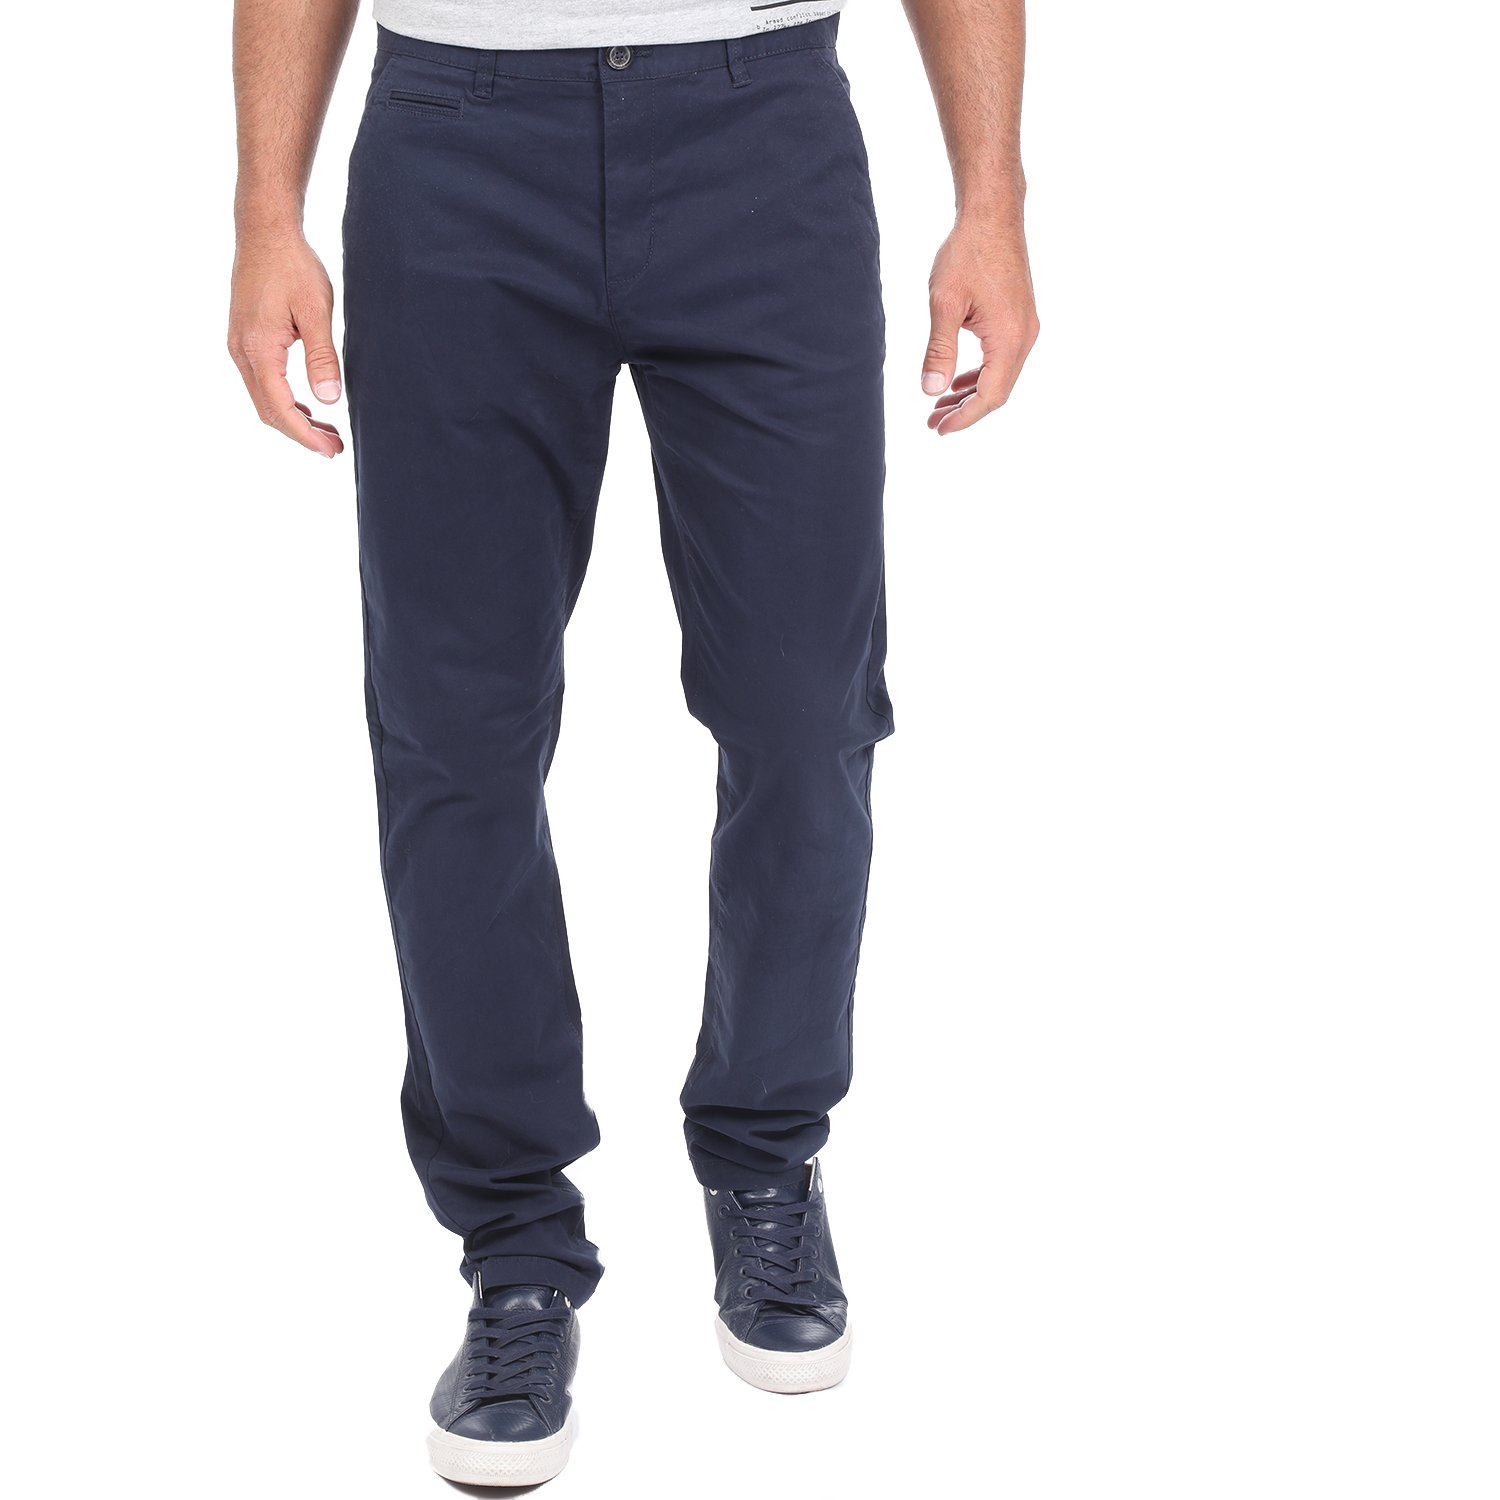 Ανδρικά/Ρούχα/Παντελόνια/Chinos BATTERY - Ανδρικό chino παντελόνι BATTERY SOLID μπλε